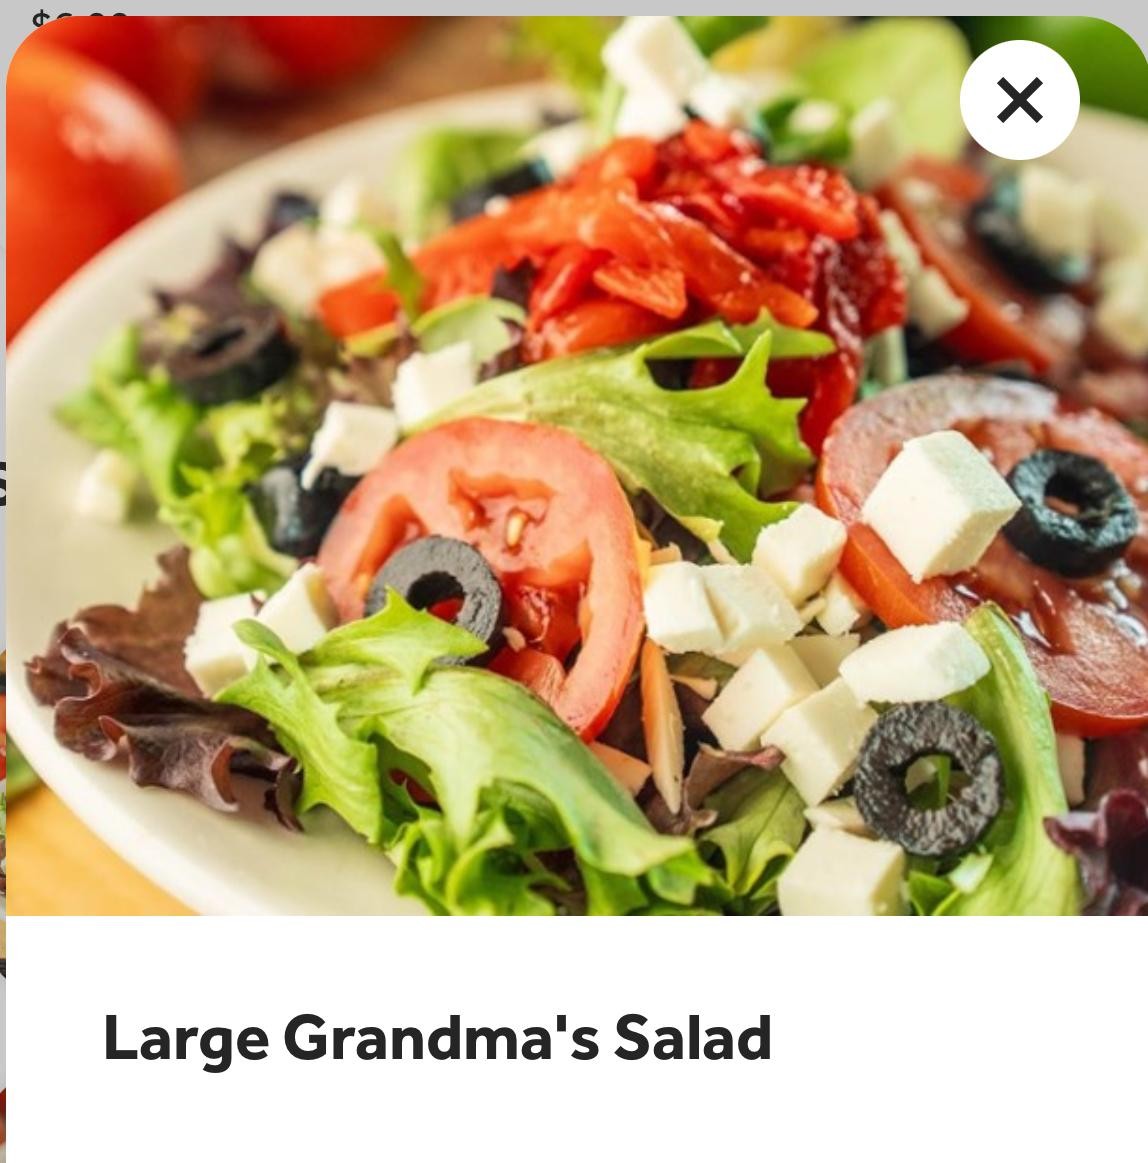 Large Grandma's Salad